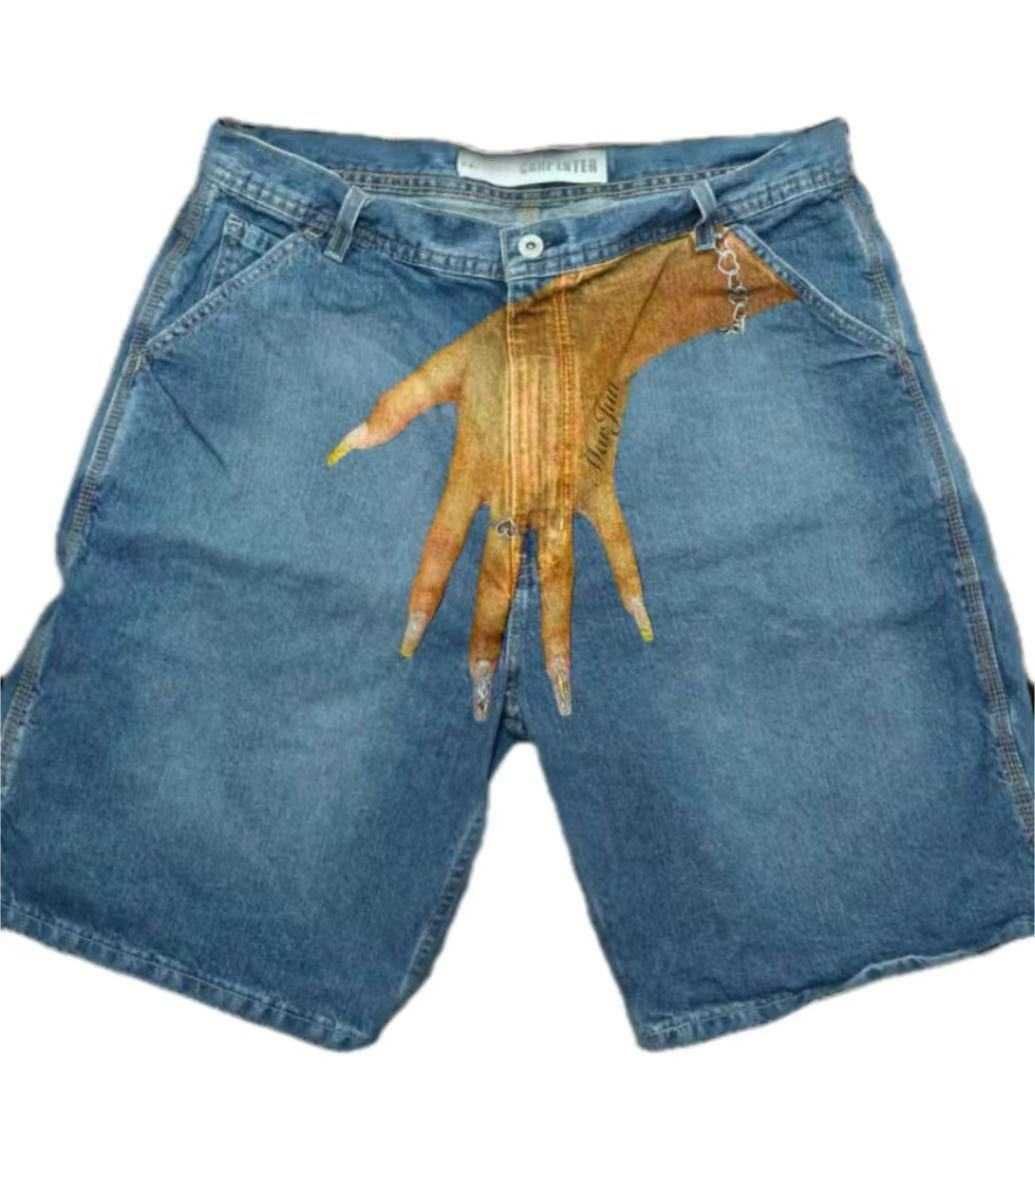 Tru Blue or Crazy hand shorts jeans (y2k шорти з рукой)